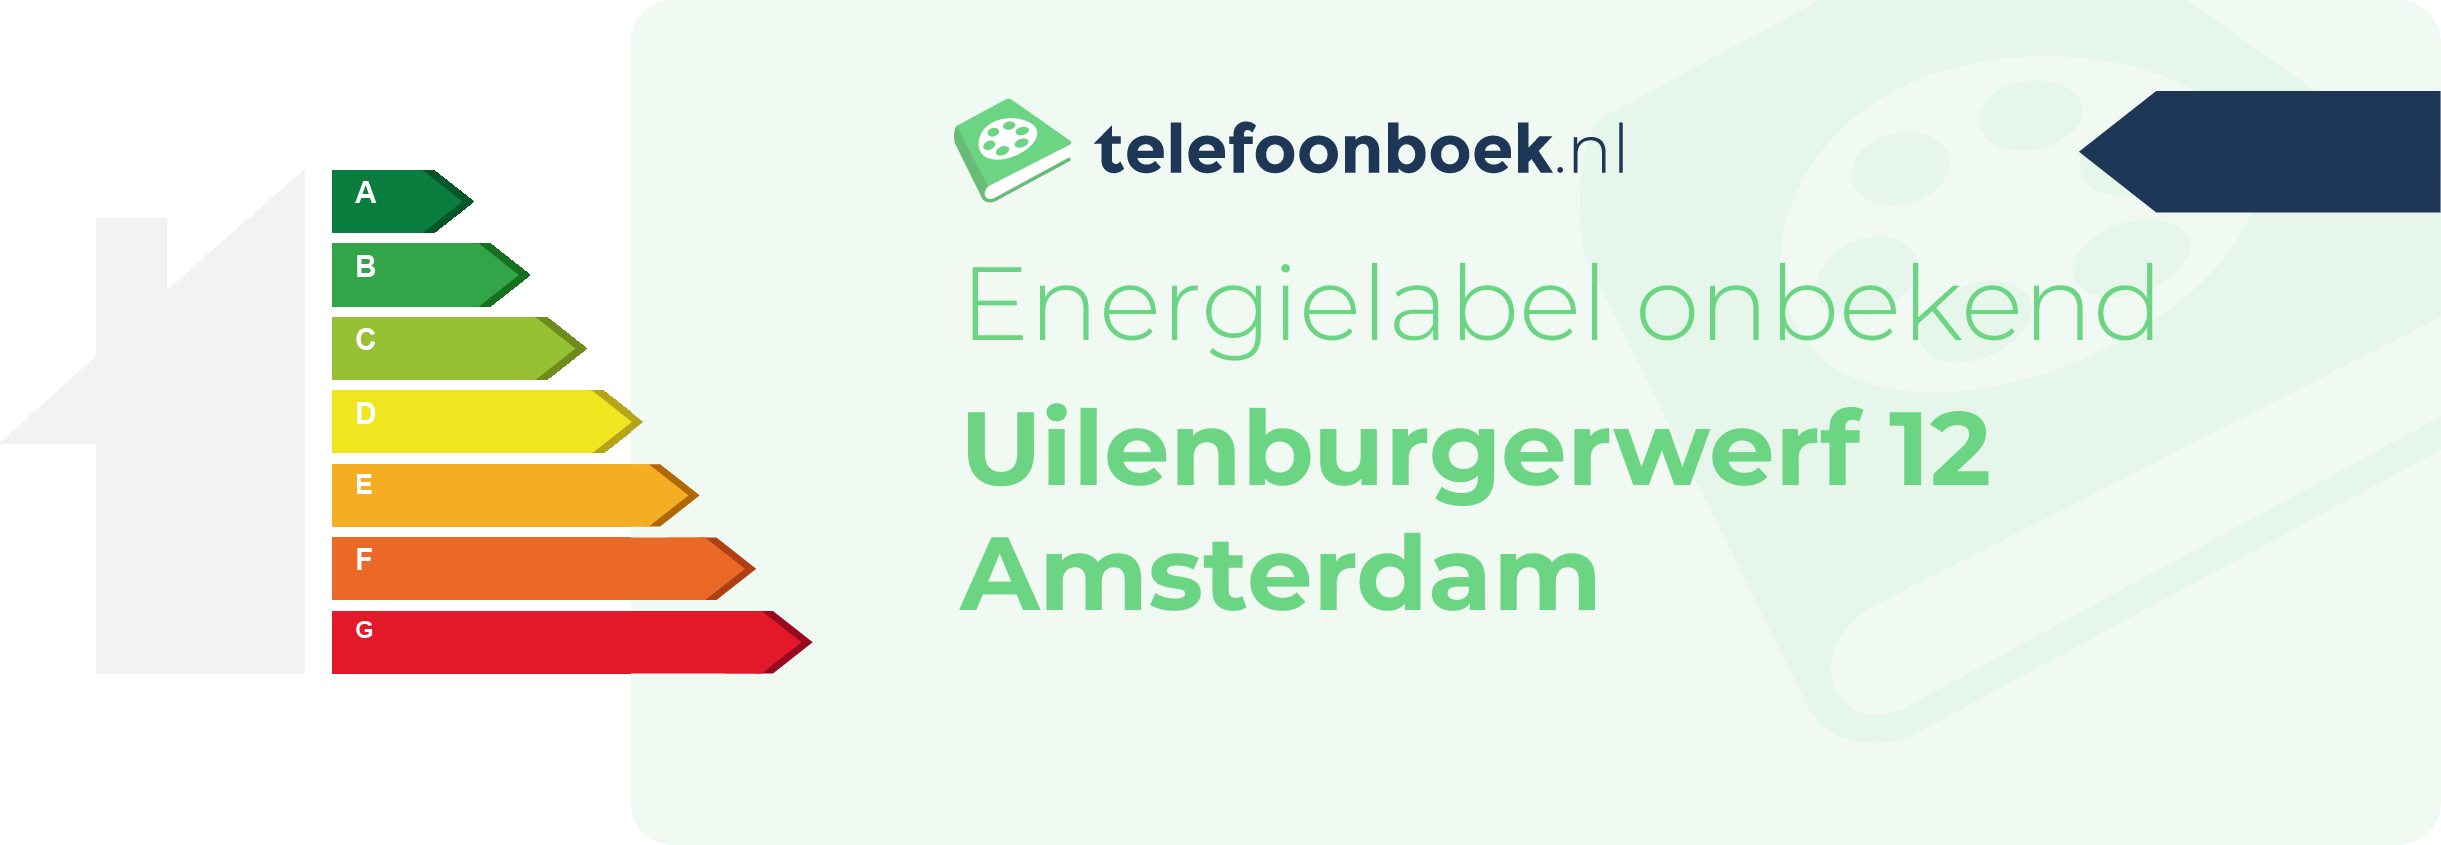 Energielabel Uilenburgerwerf 12 Amsterdam